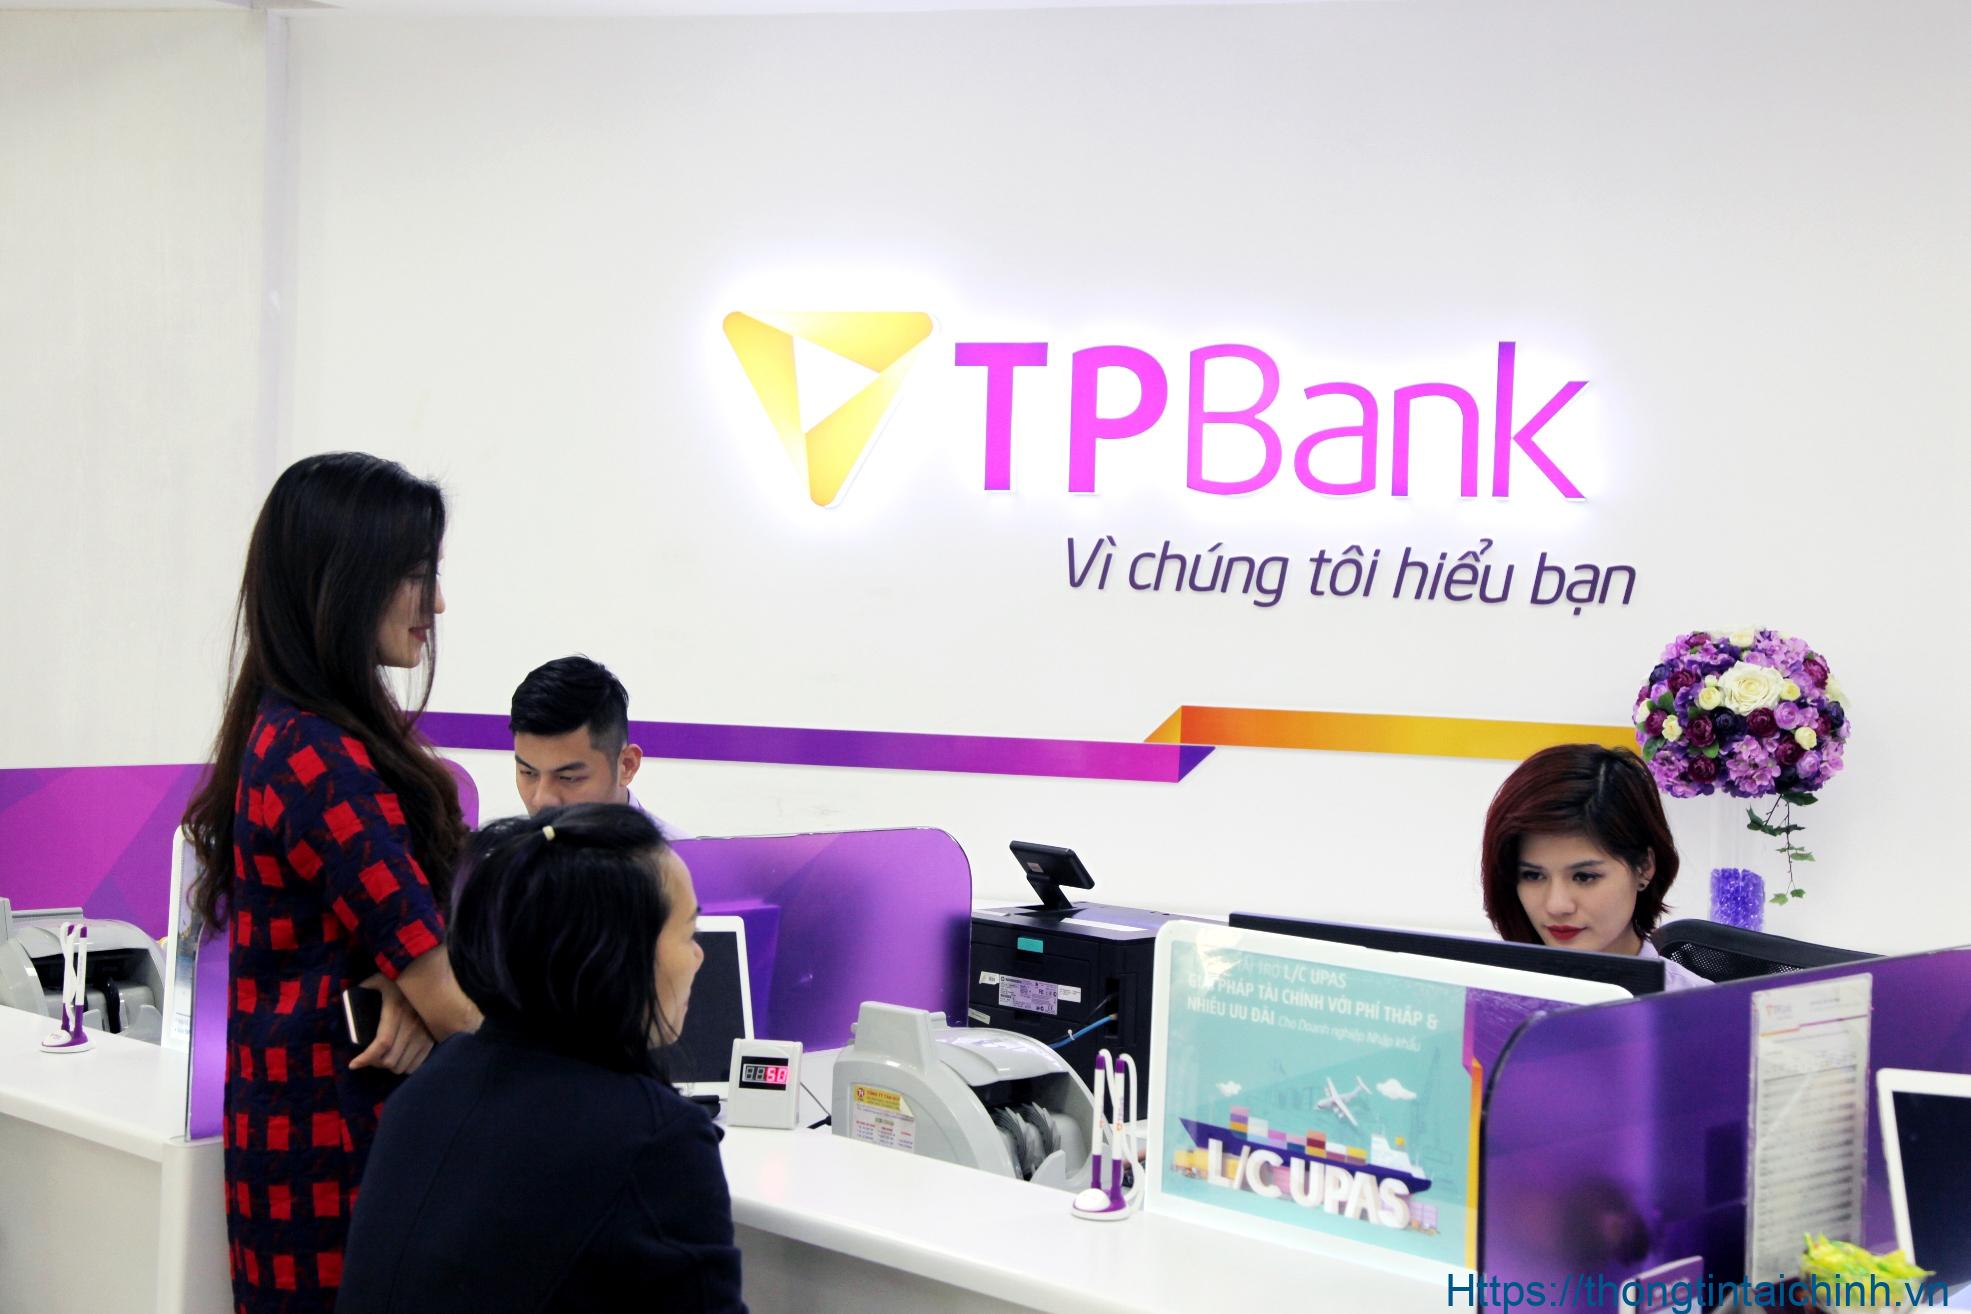 Ngân hàng TPBank với uy tín cùng nhiều năm kinh nghiệm trong lĩnh vực tài chính - ngân hàng